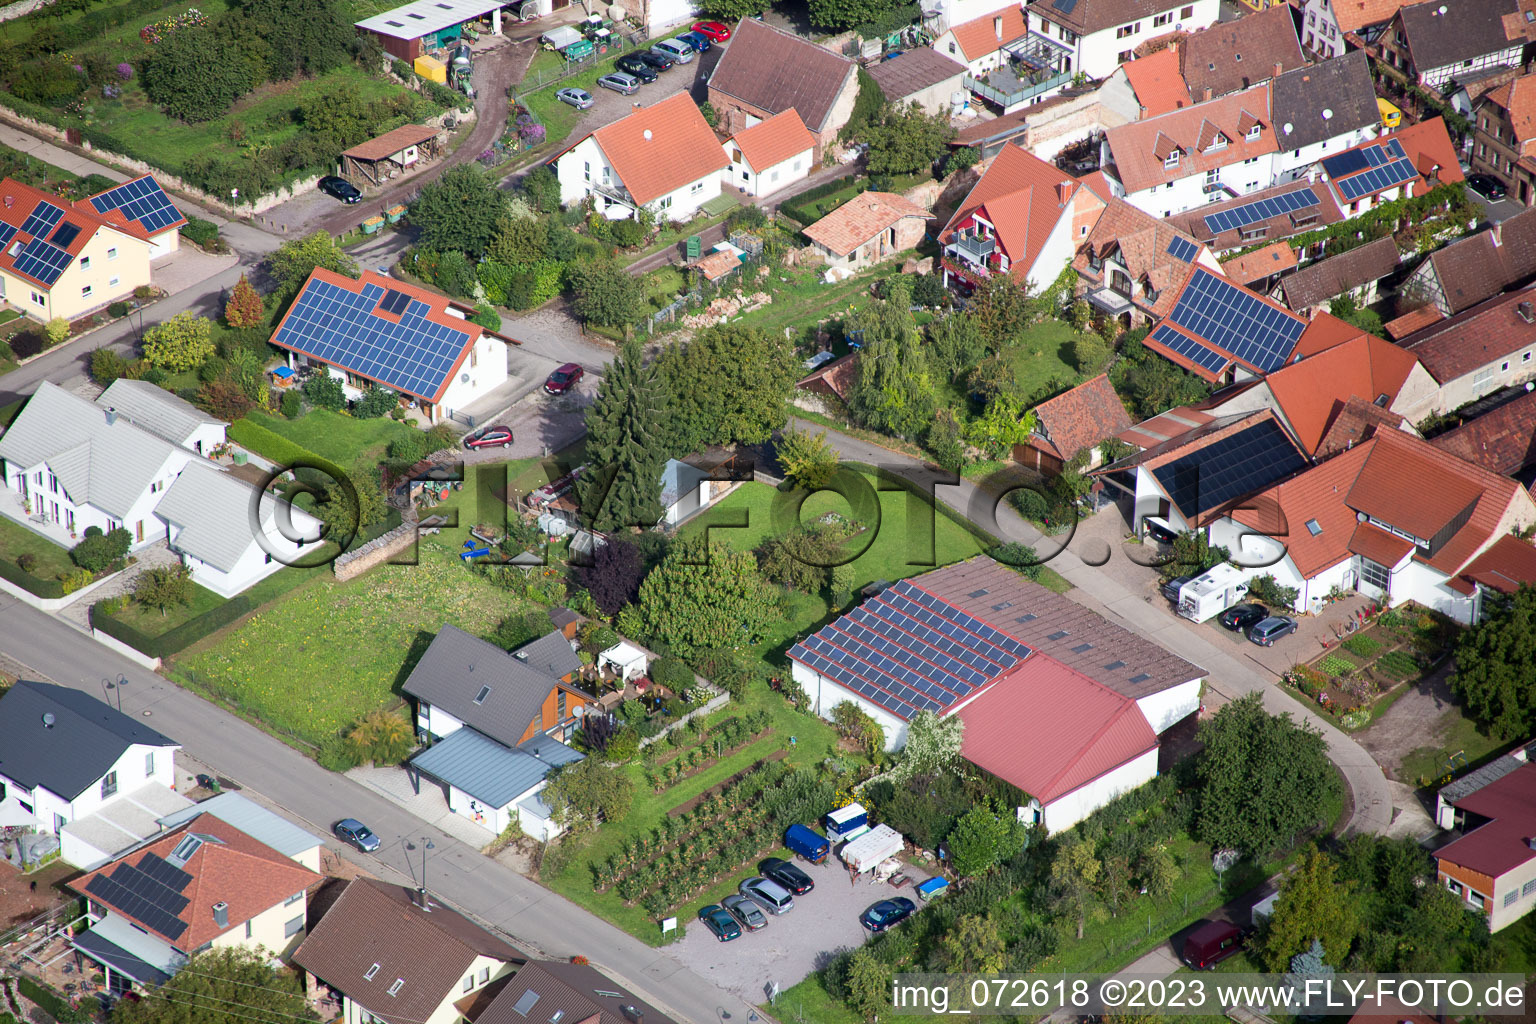 Aerial view of District Heuchelheim in Heuchelheim-Klingen in the state Rhineland-Palatinate, Germany